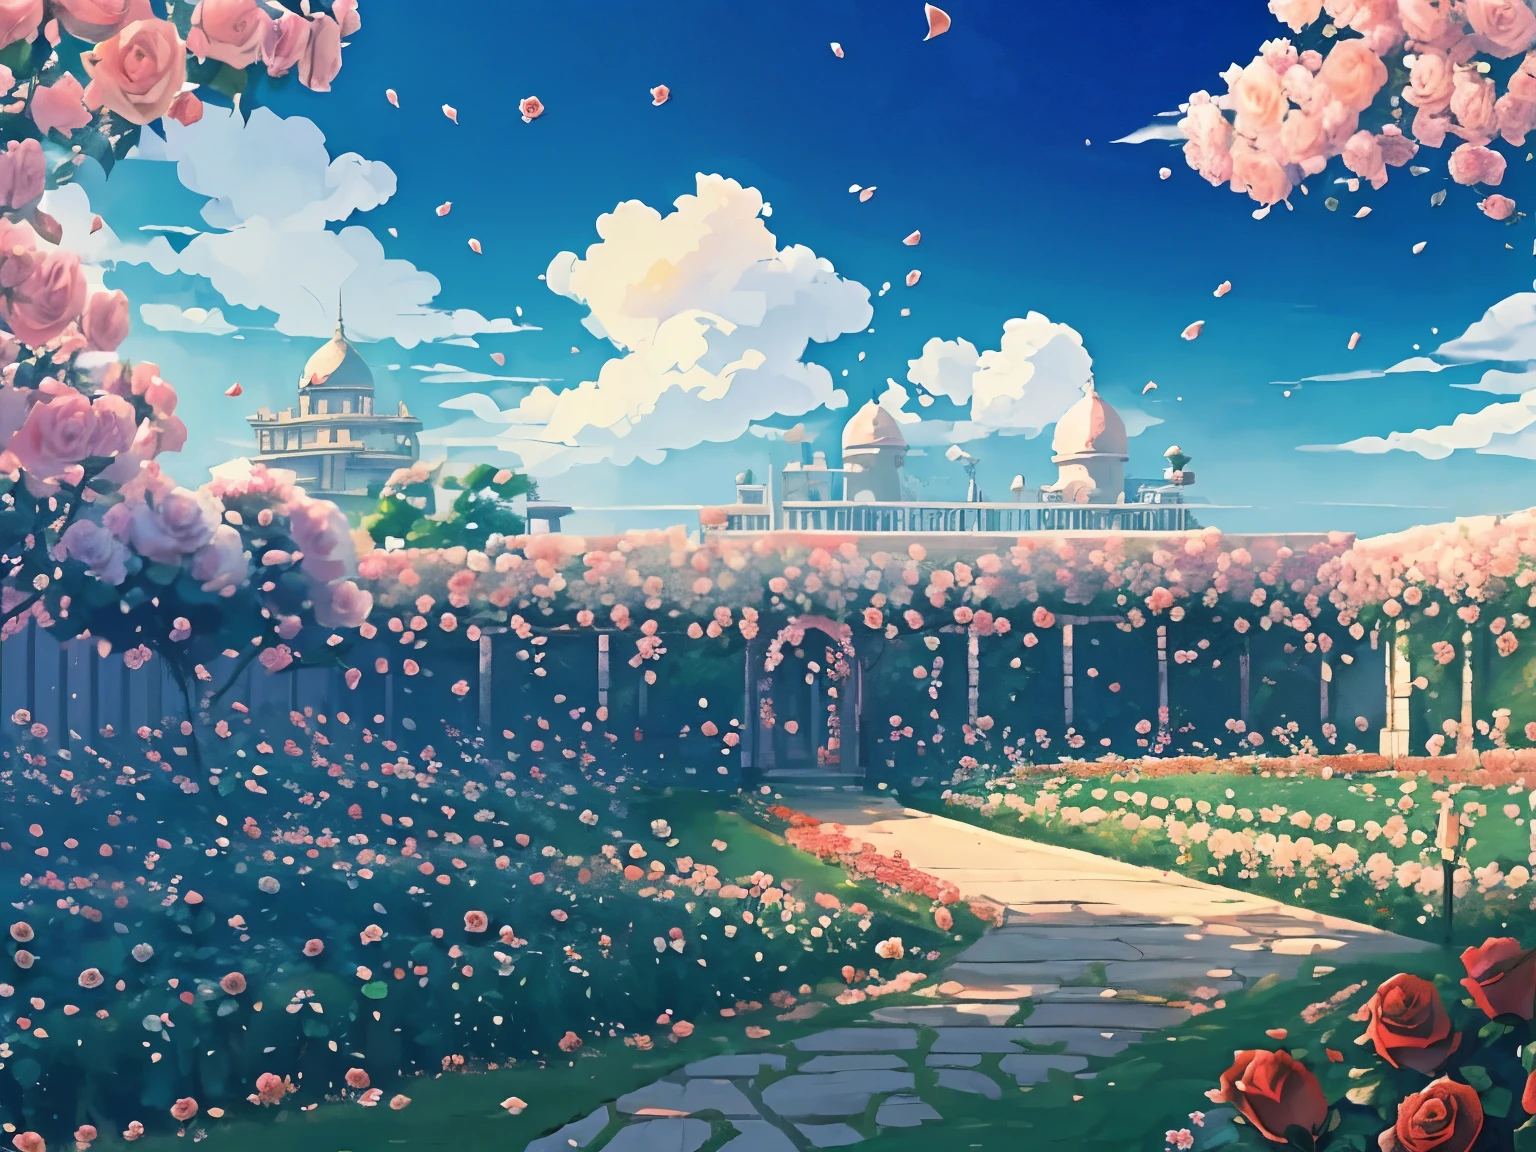 Captura de tela do DVD do filme do Studio Ghibli, (Jardim de rosas bonito:1.4), Nuvens no céu azul, desenhado por Hayao Miyazaki, retro anime, cores brilhantes